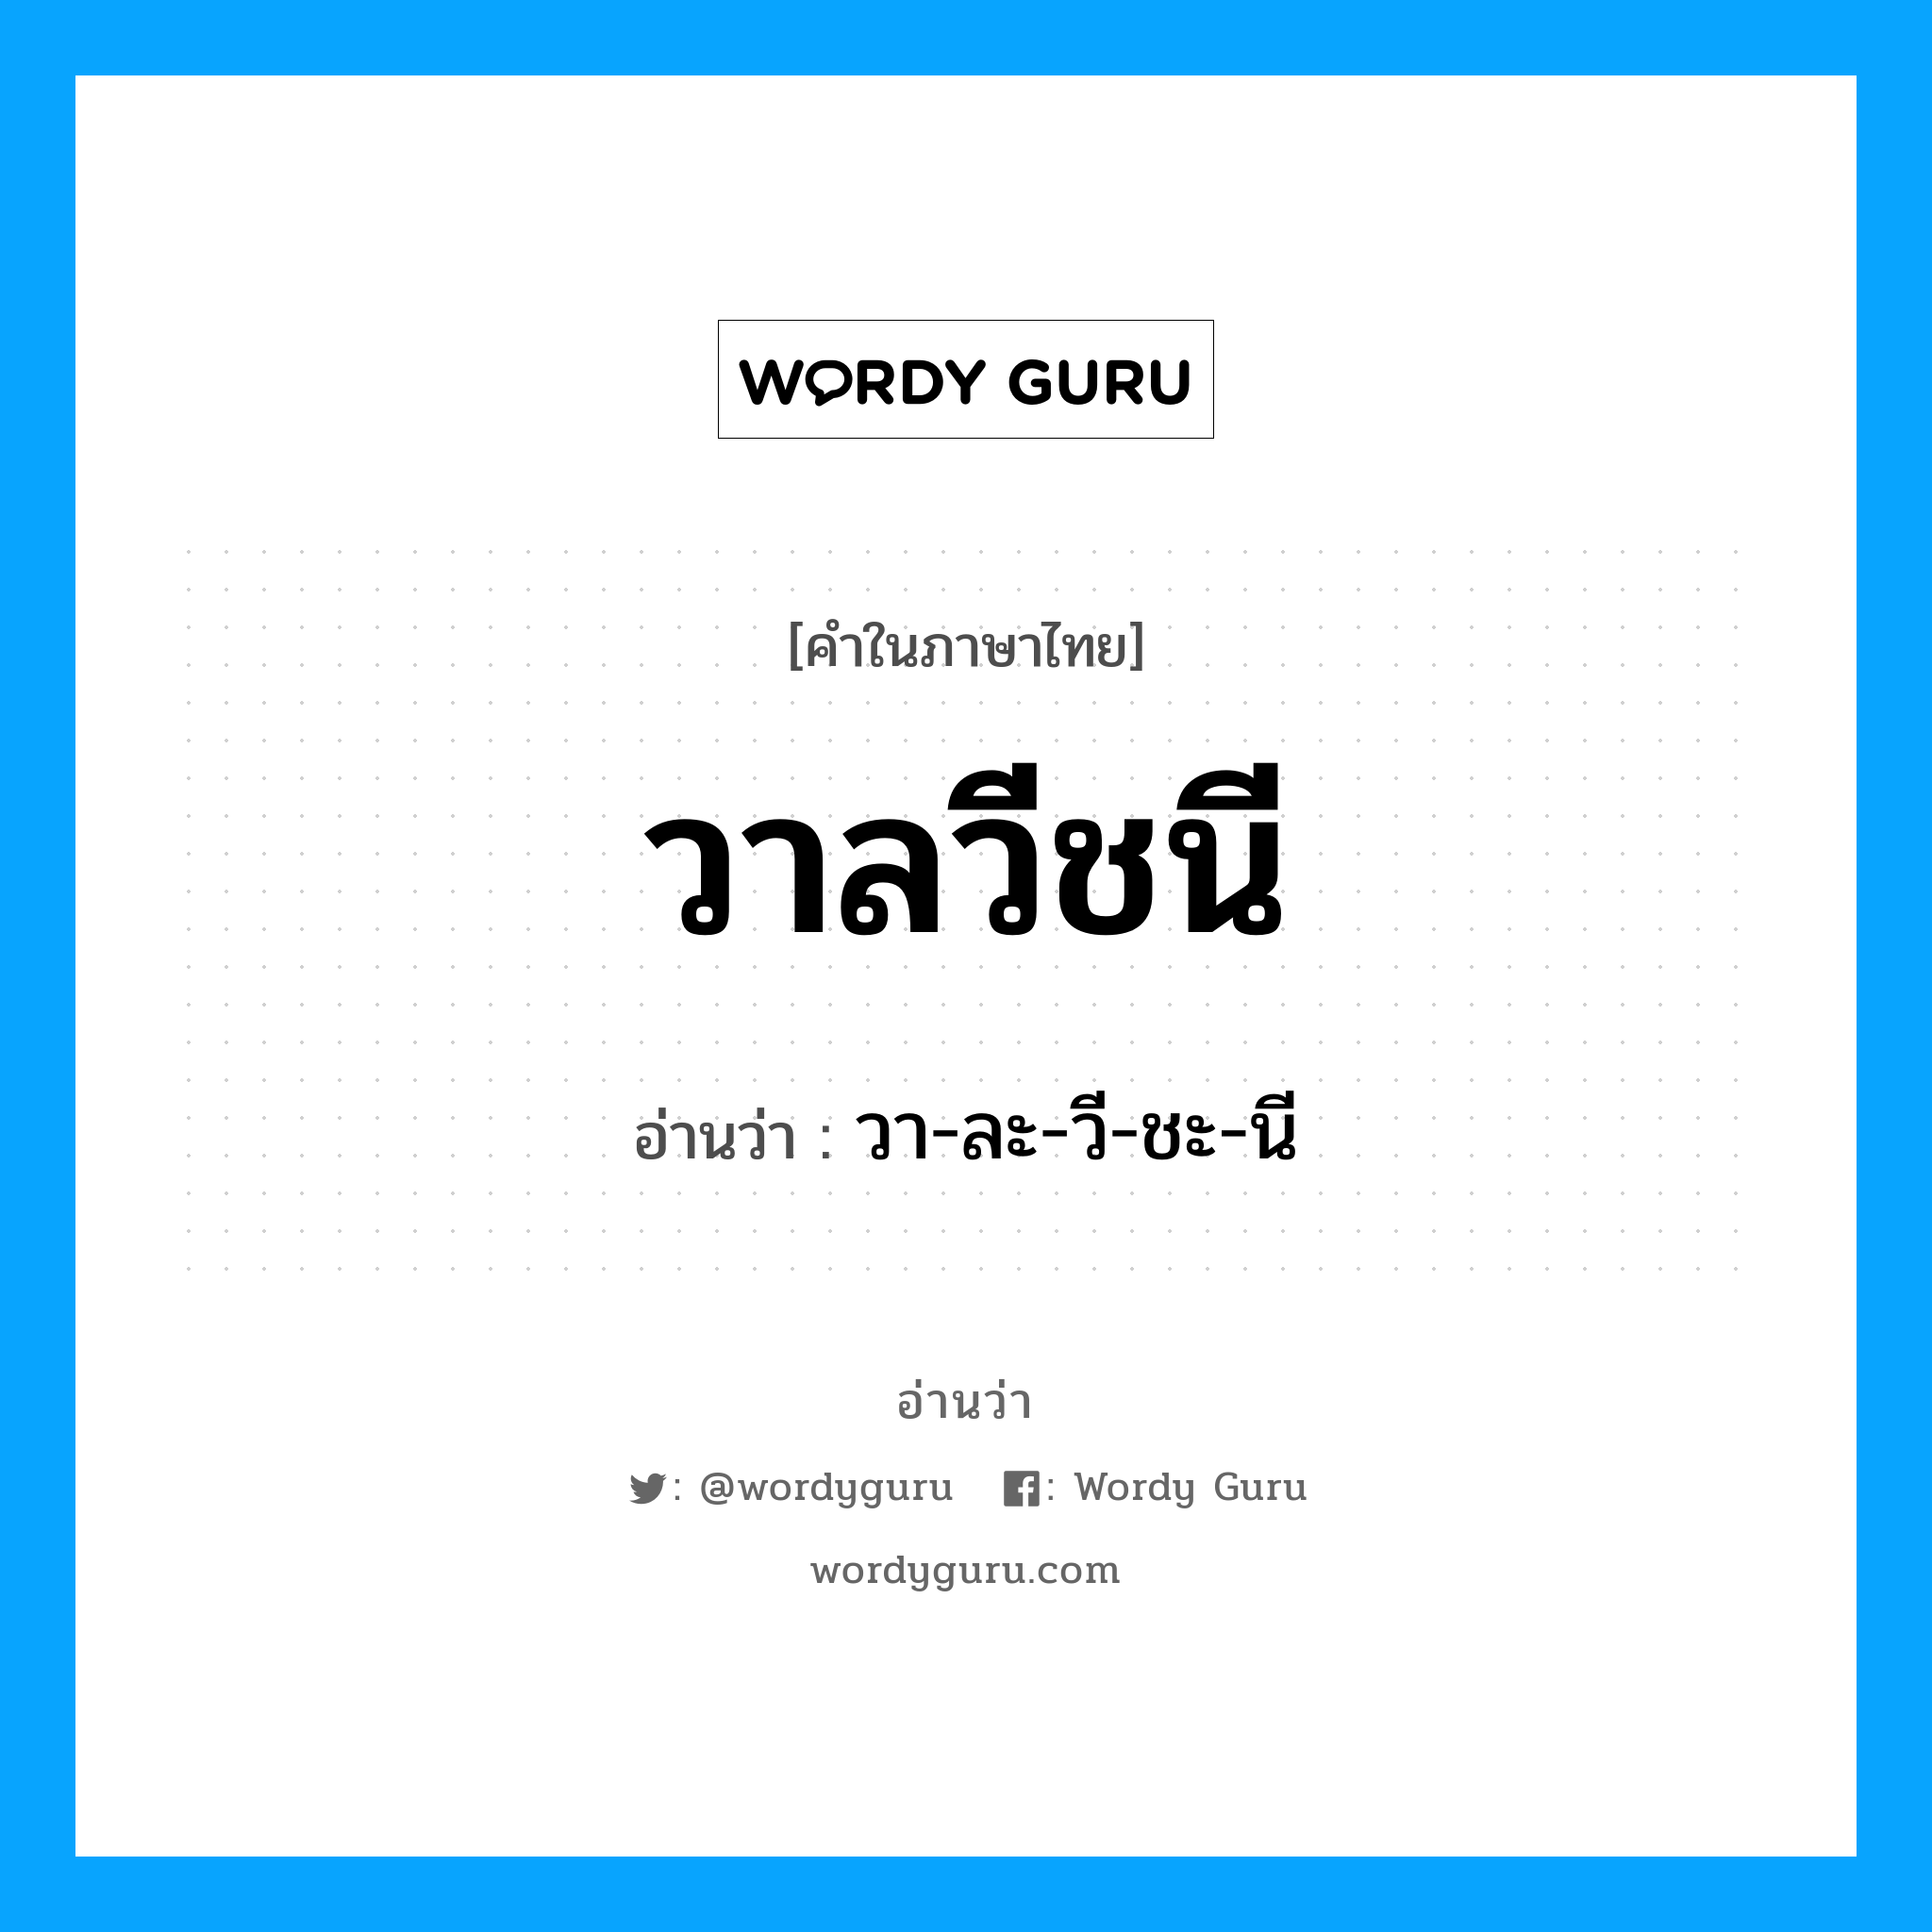 วา-ละ-วี-ชะ-นี เป็นคำอ่านของคำไหน?, คำในภาษาไทย วา-ละ-วี-ชะ-นี อ่านว่า วาลวีชนี